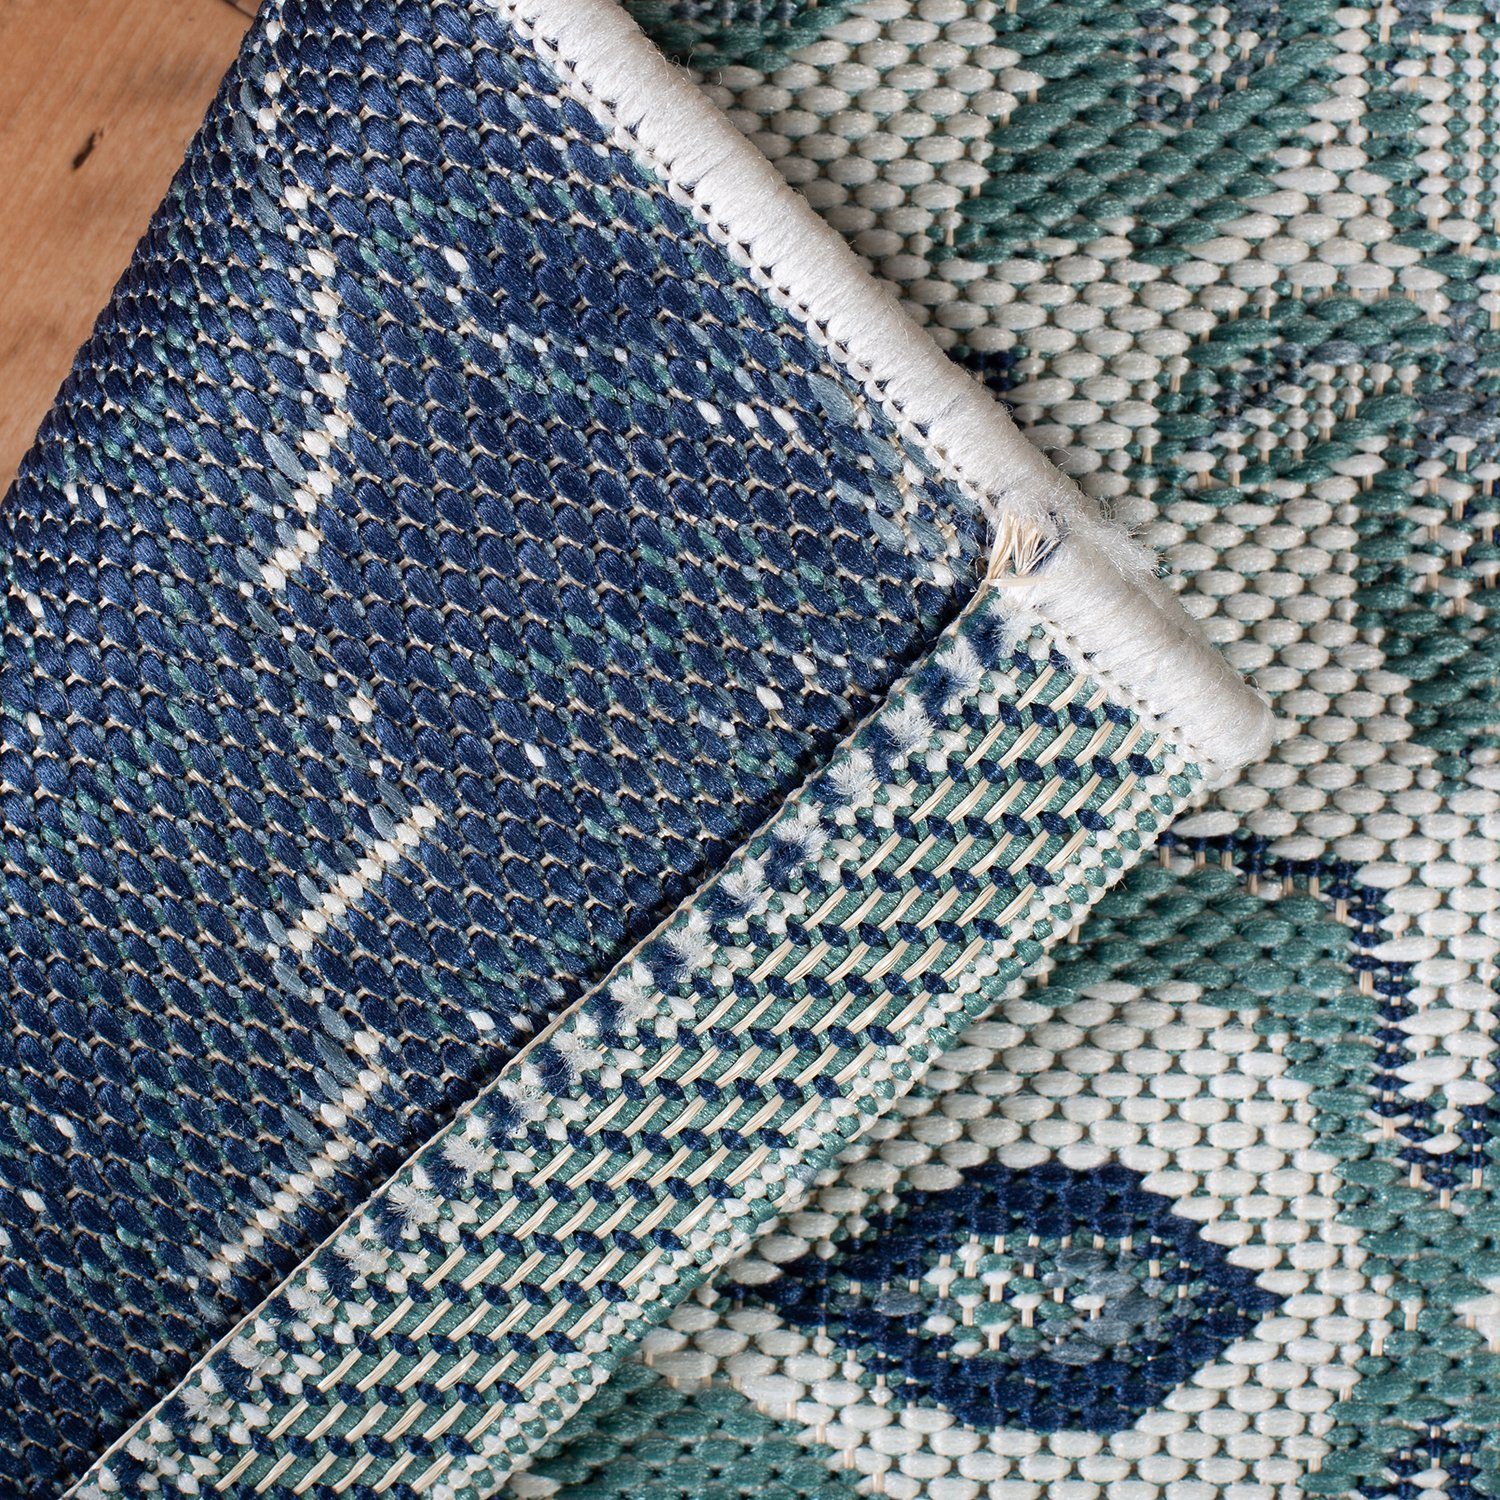 Kunststoff Teppich Türkis Ornament aus DomDeco und Außen, Tiles für Innen Teppich